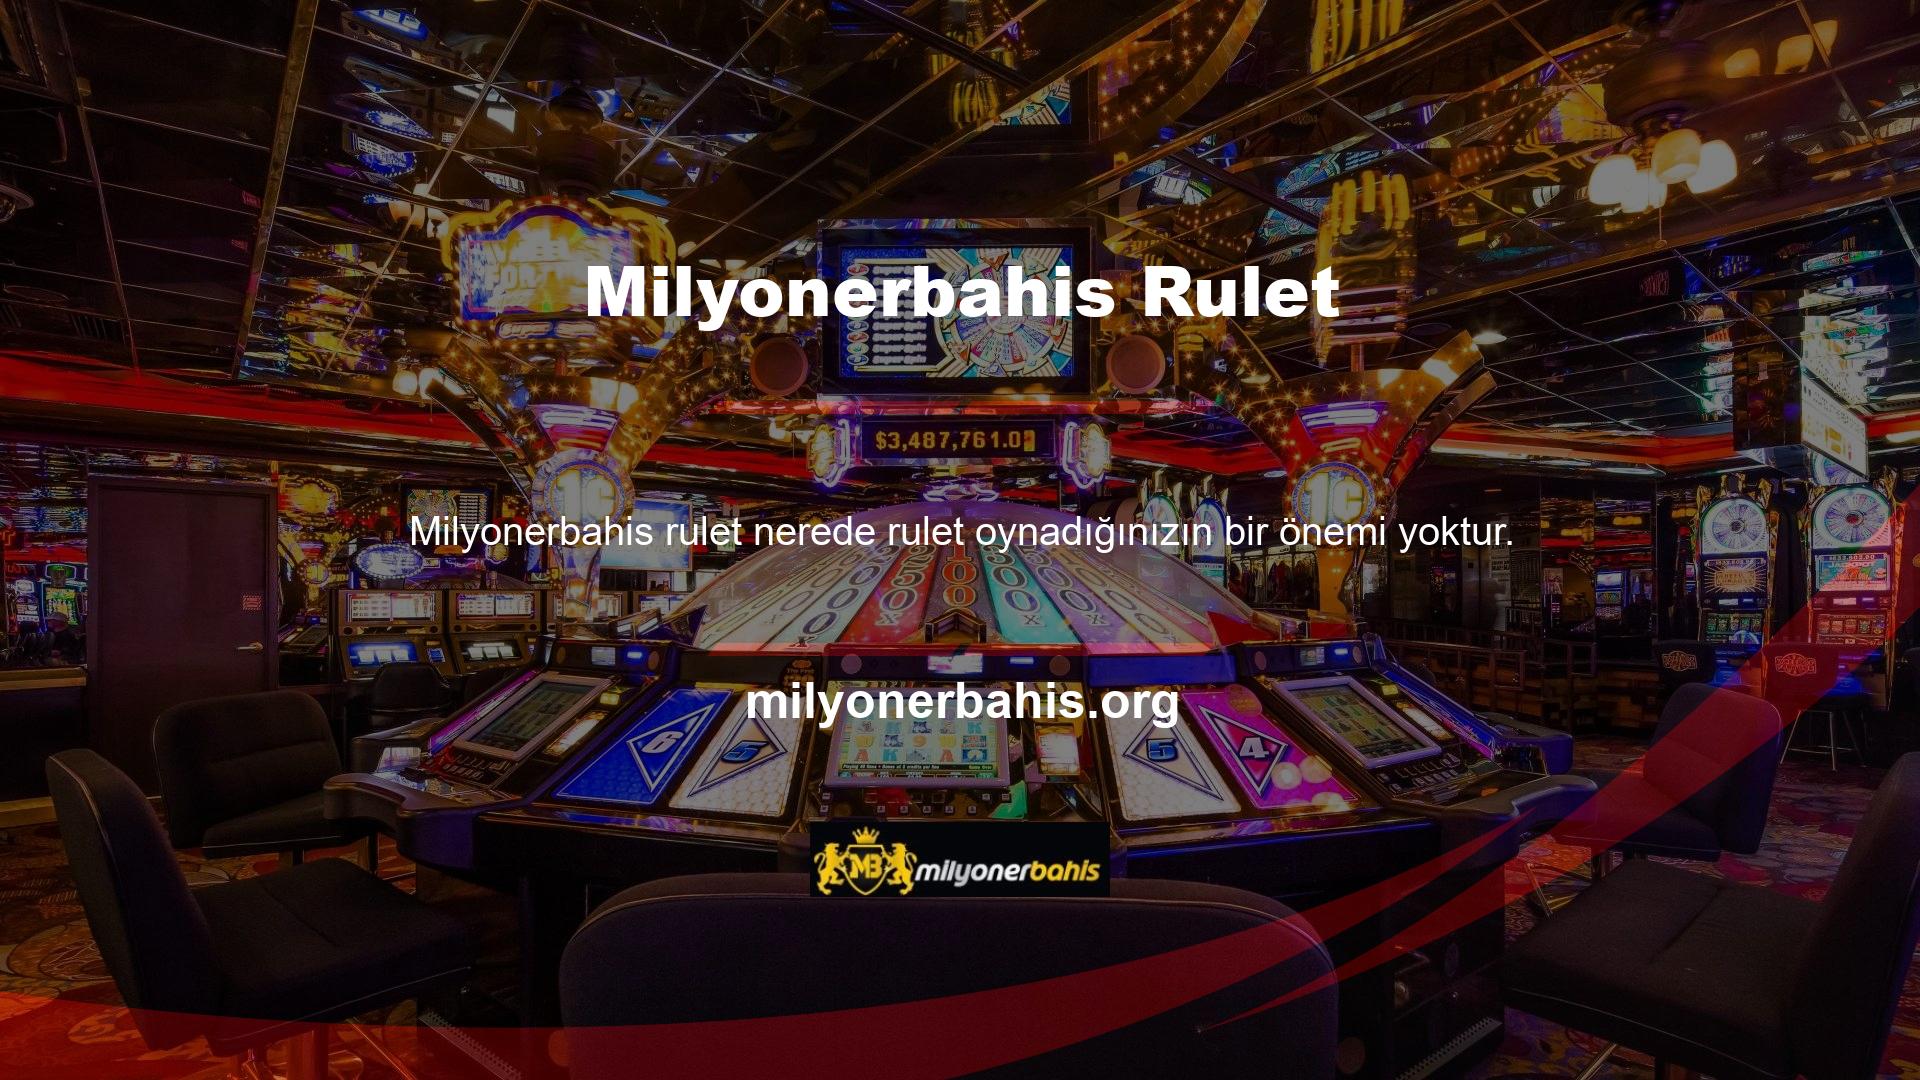 Çevrimiçi casinolar olarak, genellikle kara tabanlı casinolarla aynı kurallara ve bahis seçeneklerine sahiptirler ve mobil casinolarla aynı seçenekleri sunarlar